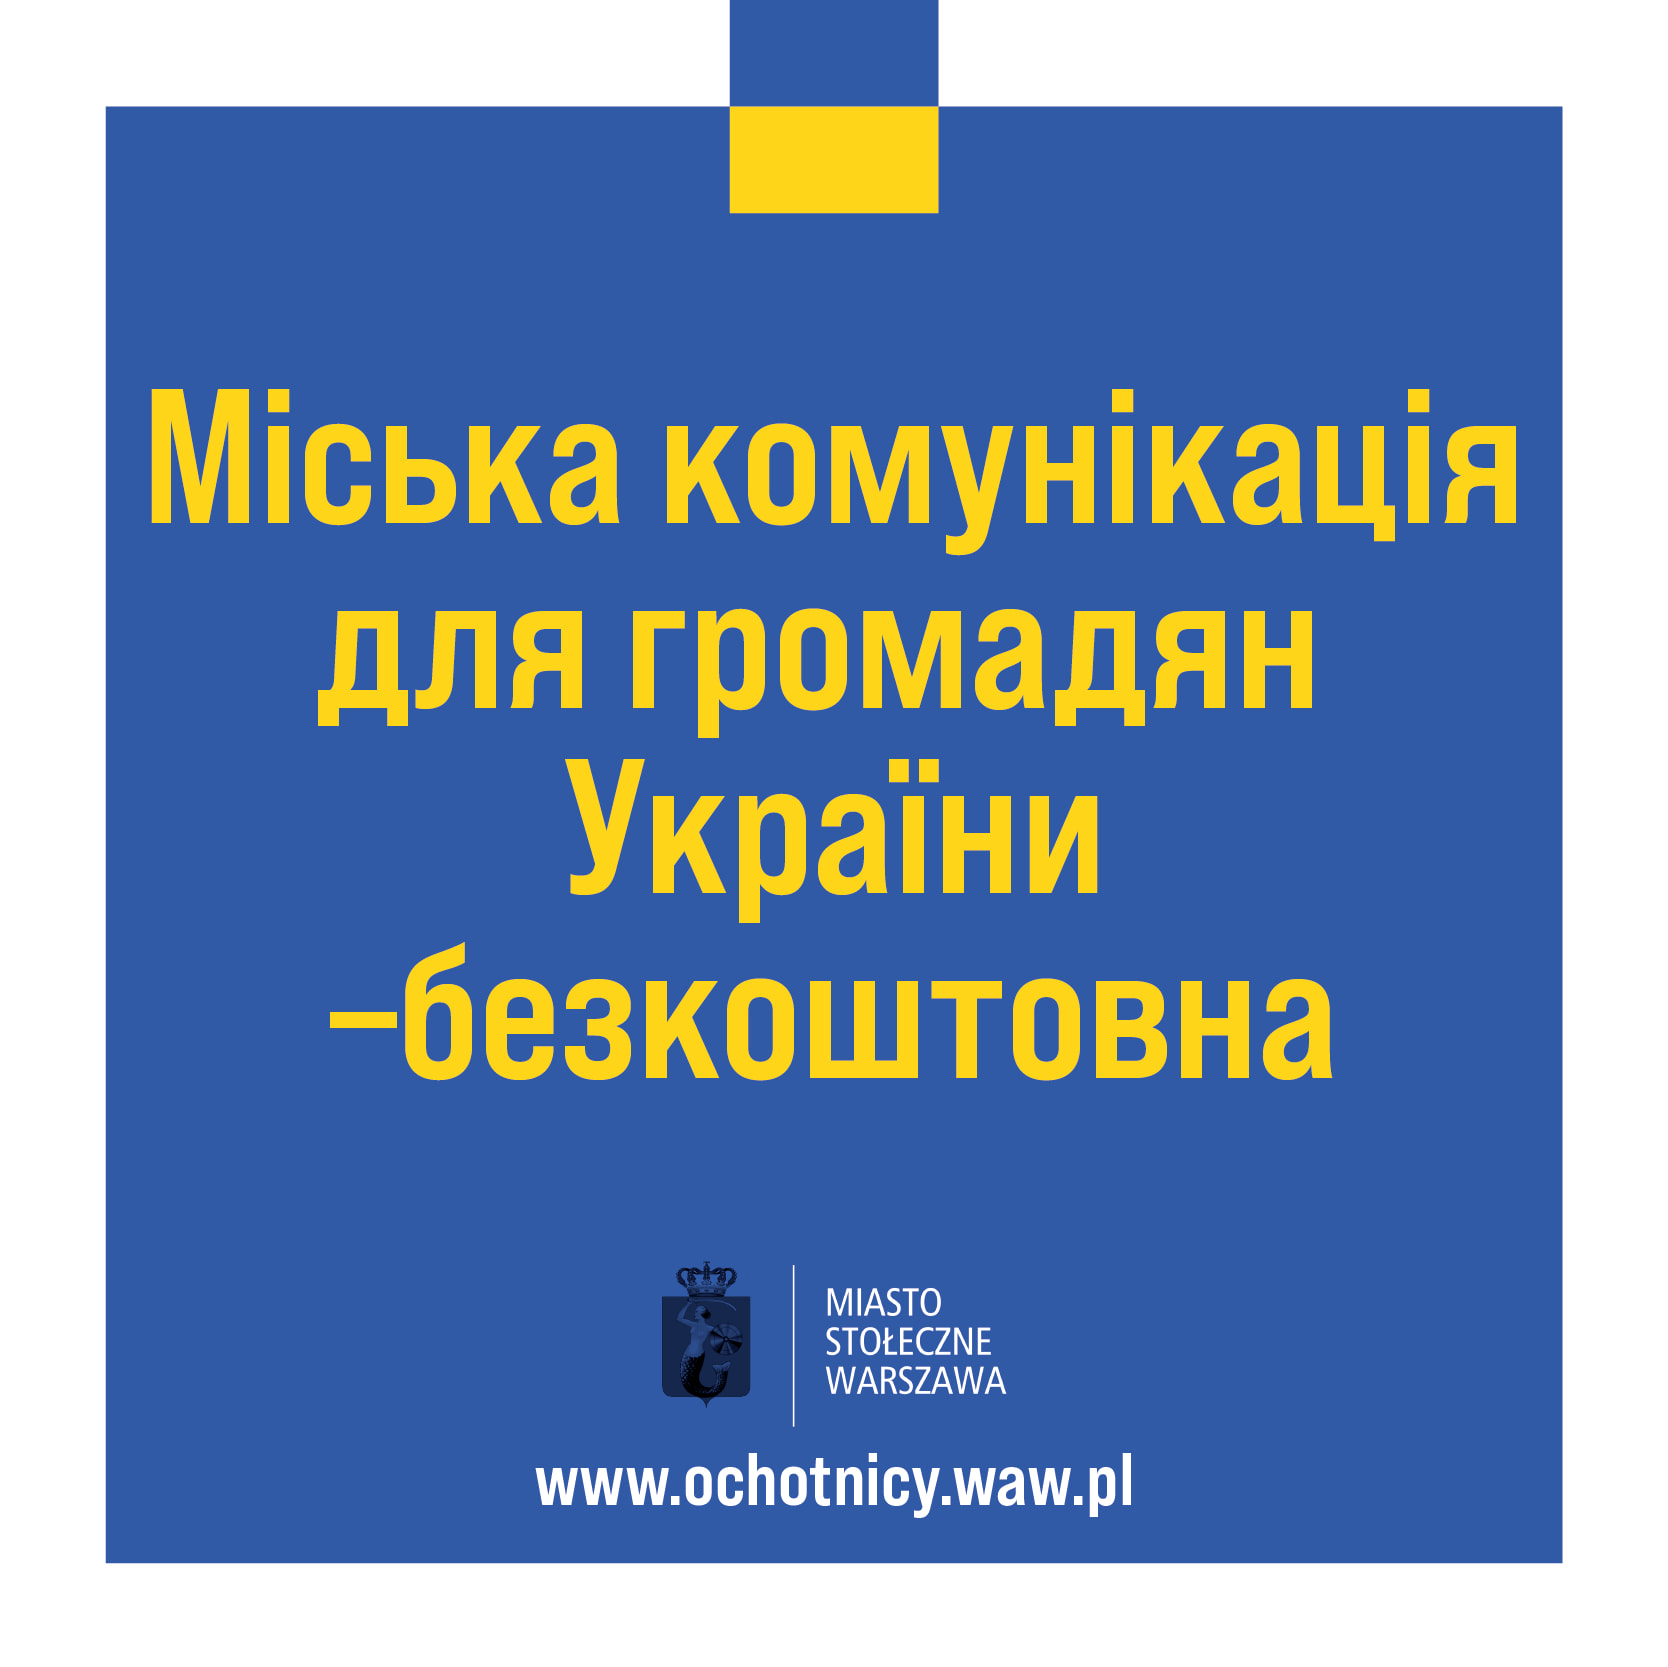 Decyzją Prezydenta m.st. Warszawy Rafała Trzaskowskiego osoby legitymujące się ukraińskim dokumentem tożsamości mogą podróżować komunikacja miejską WTP za darmo.